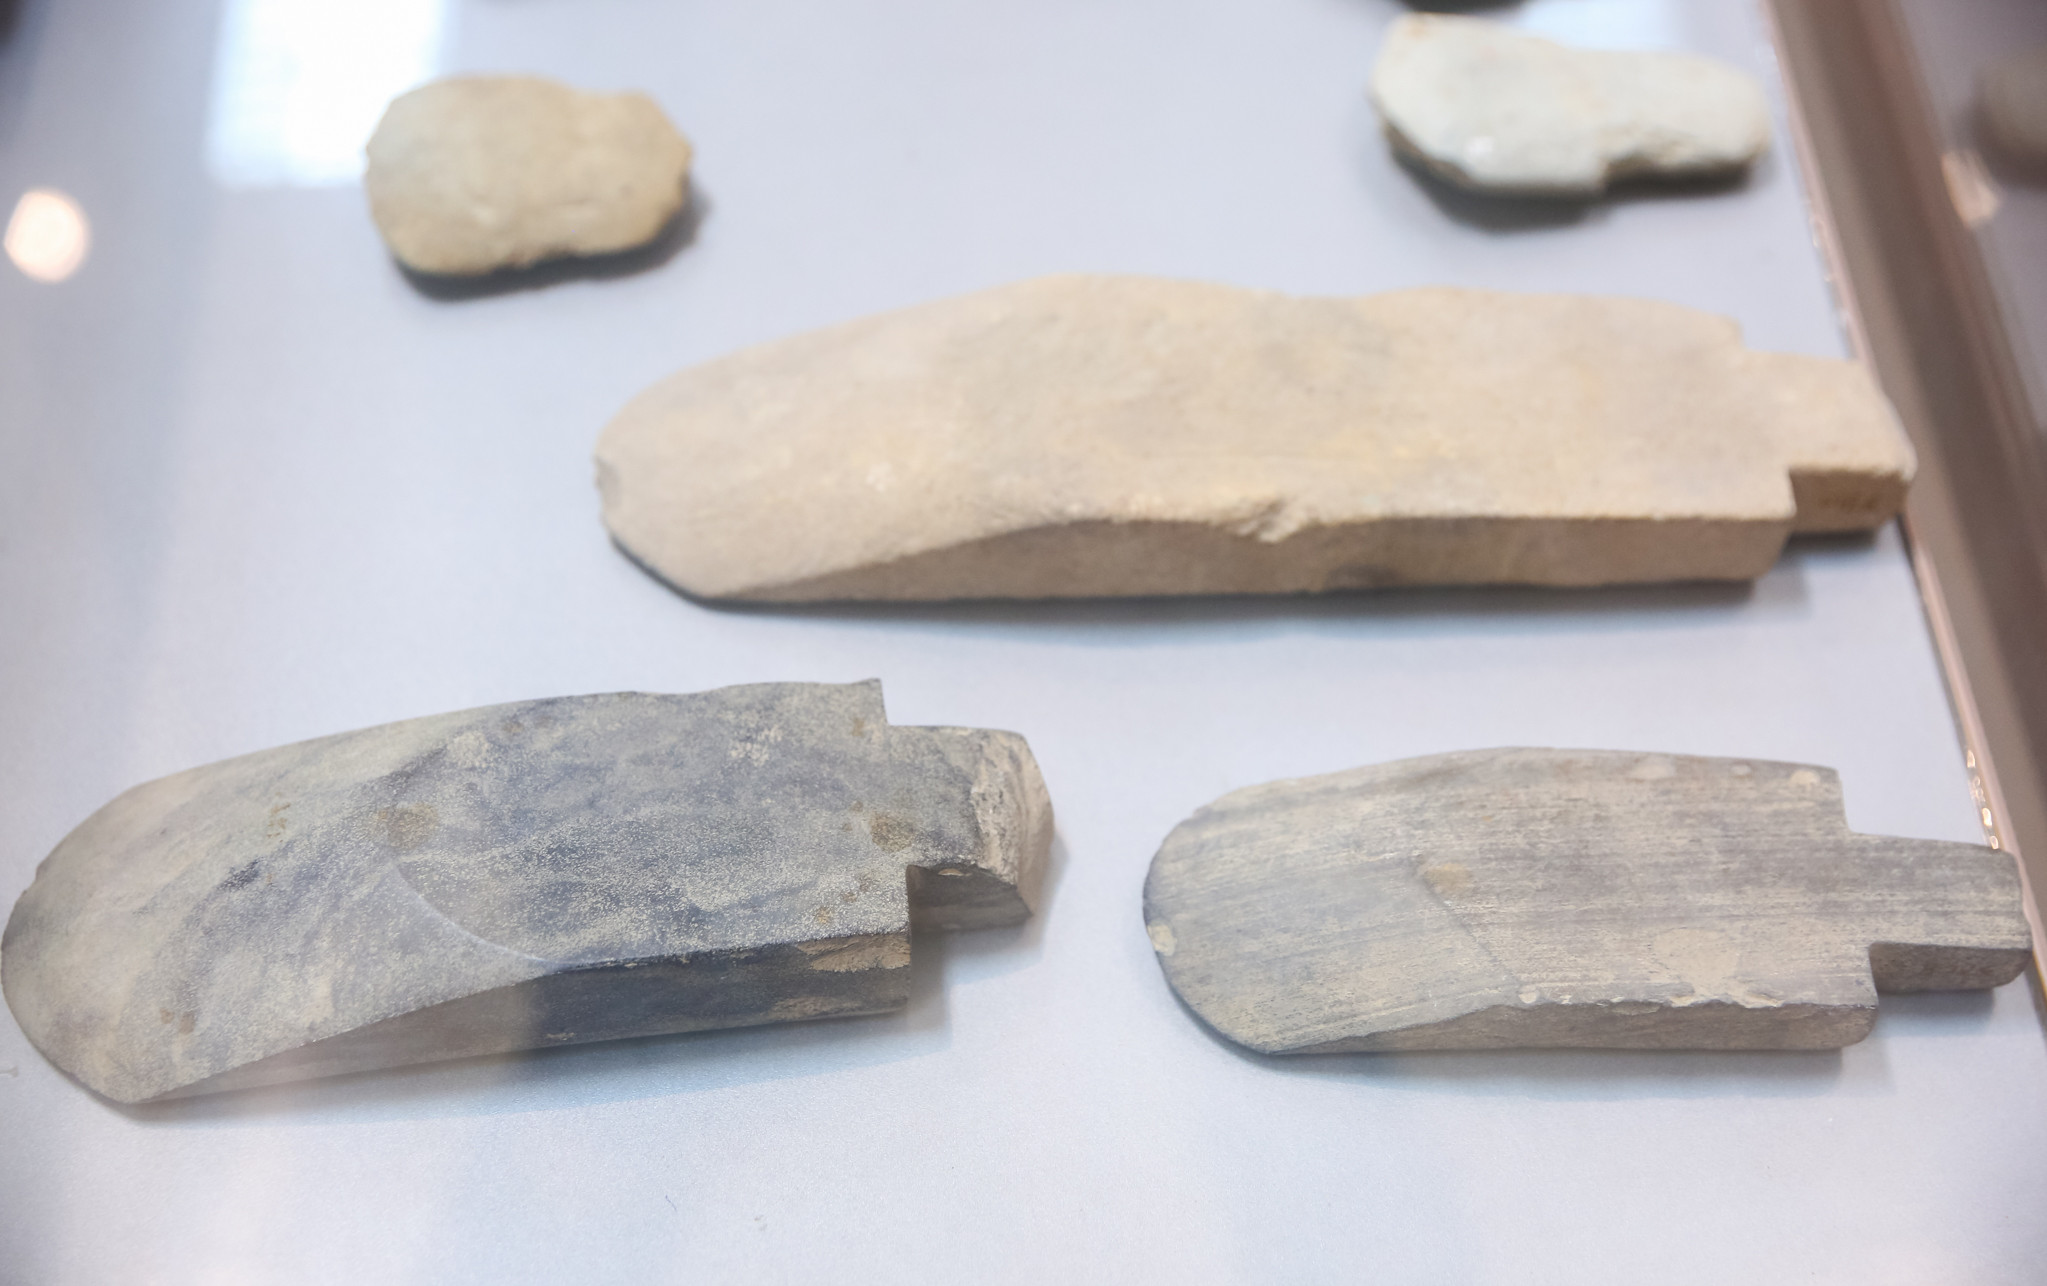 Những công cụ bằng đá được tìm thấy ở địa bàn huyện Yên Thành cho thấy vùng đất này từng là nơi cư trú của người Việt cổ. Đồng thời, thể hiện kỹ thuật, trình độ chế tác của những cư dân sinh sống từ hàng nghìn năm trước. Ảnh: Đức Anh